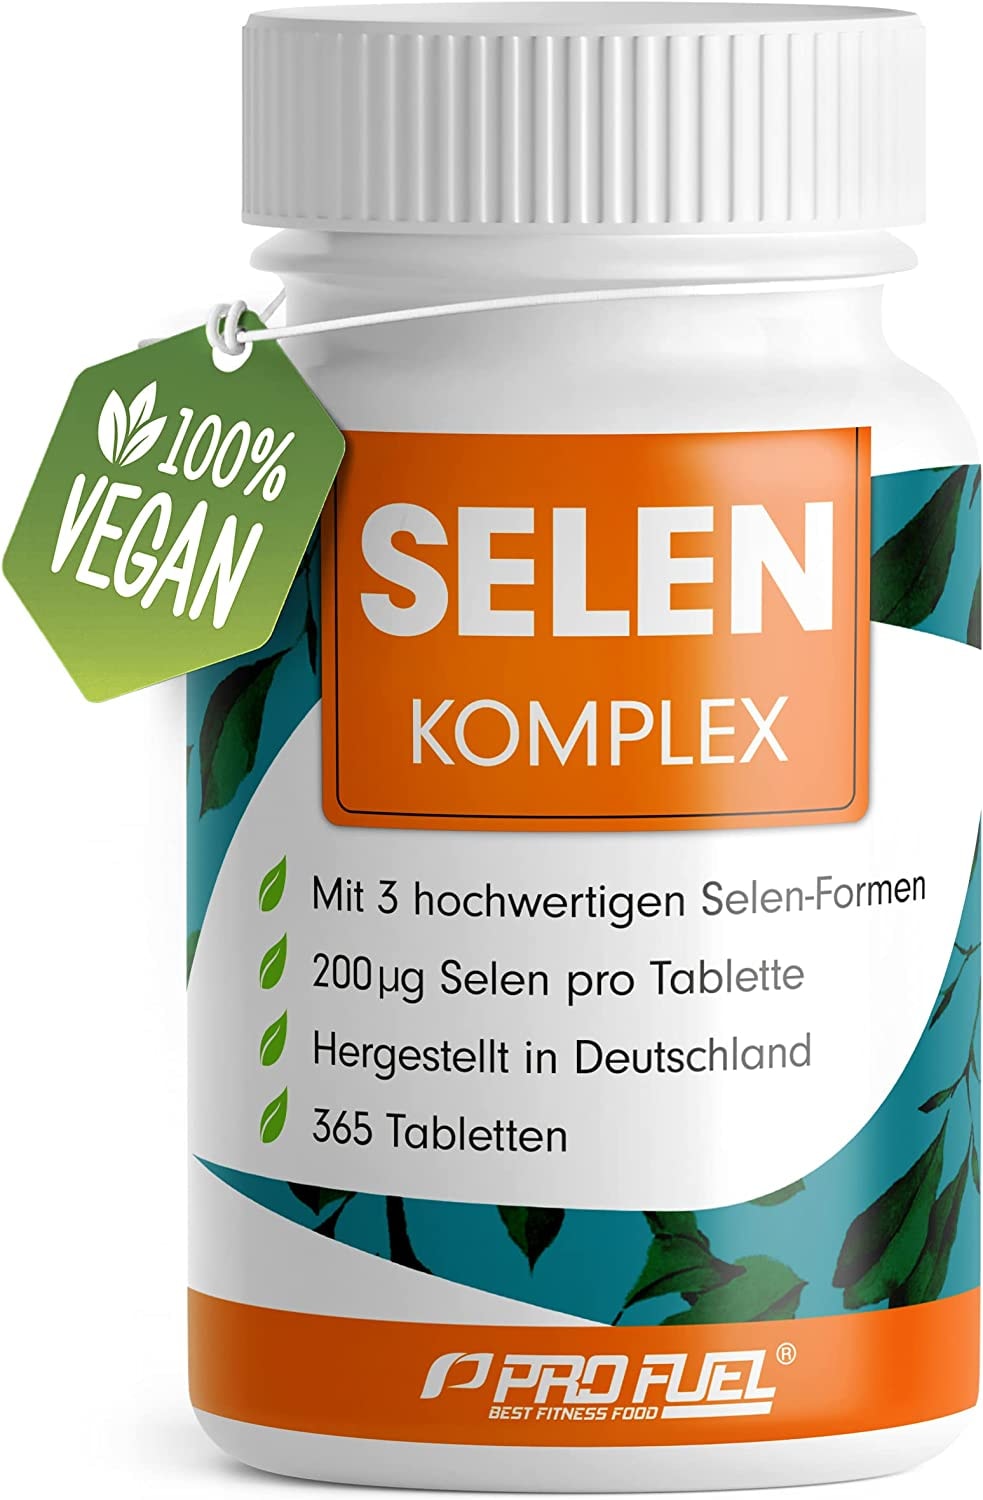 ProFuel - Selen hochdosiert 365x Selen 200µg Tabletten - Selen Komplex aus 3 hochwertigen Selenium-Quellen: Selenhefe, Selenmethionin & Natriumselenit, Selen-Tabletten ohne unerwünschte Zusatzstoffe, 100% vegan